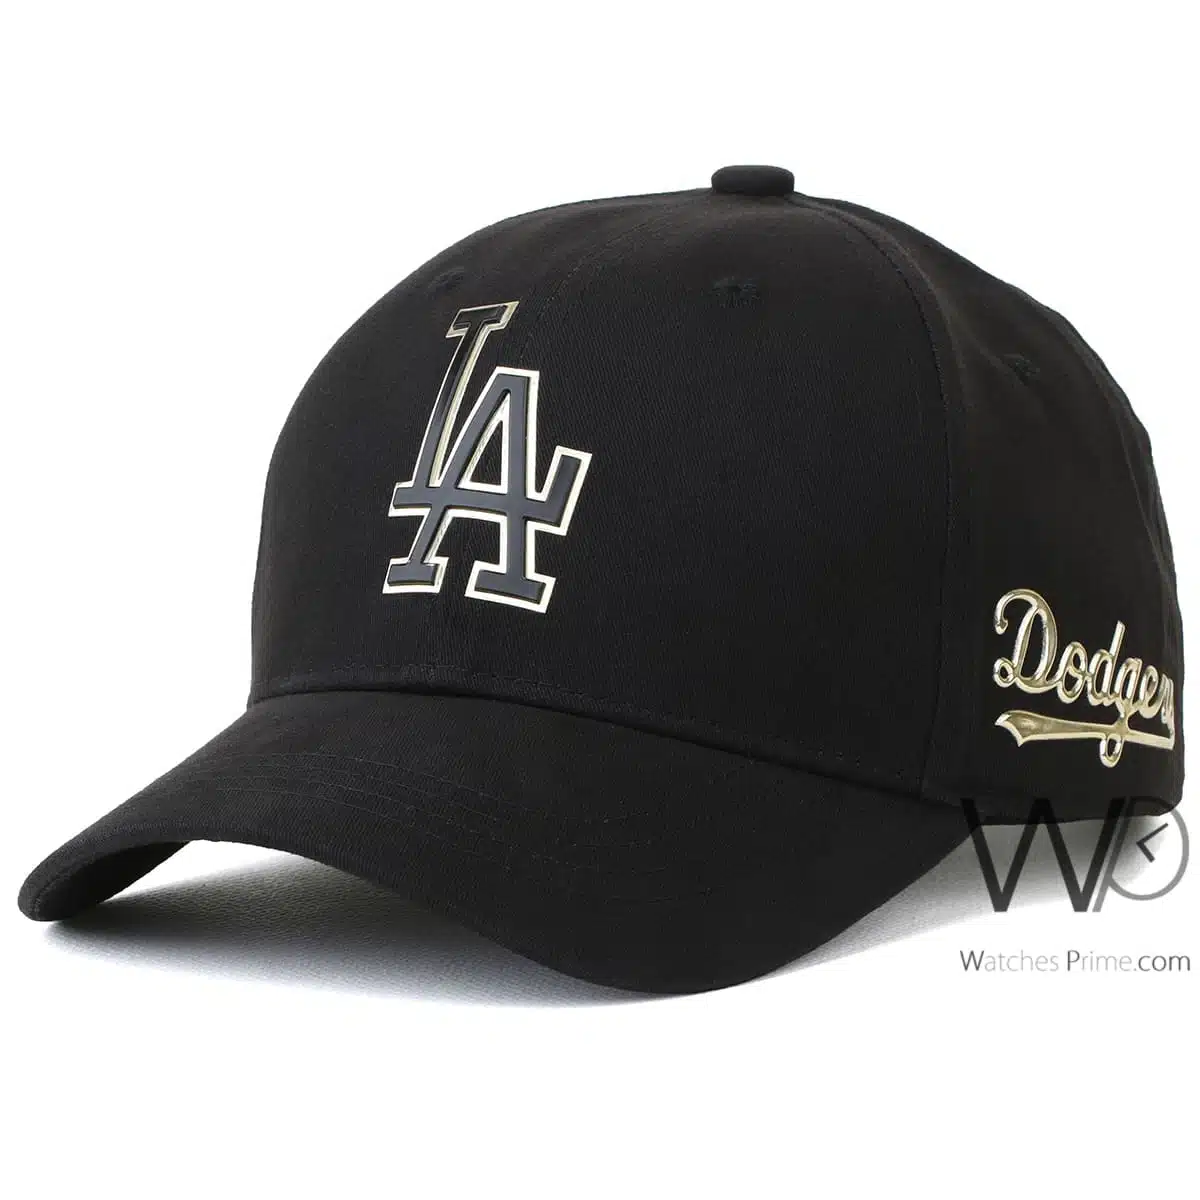 Dodgers LA Black Baseball Cotton Cap | Watches Prime